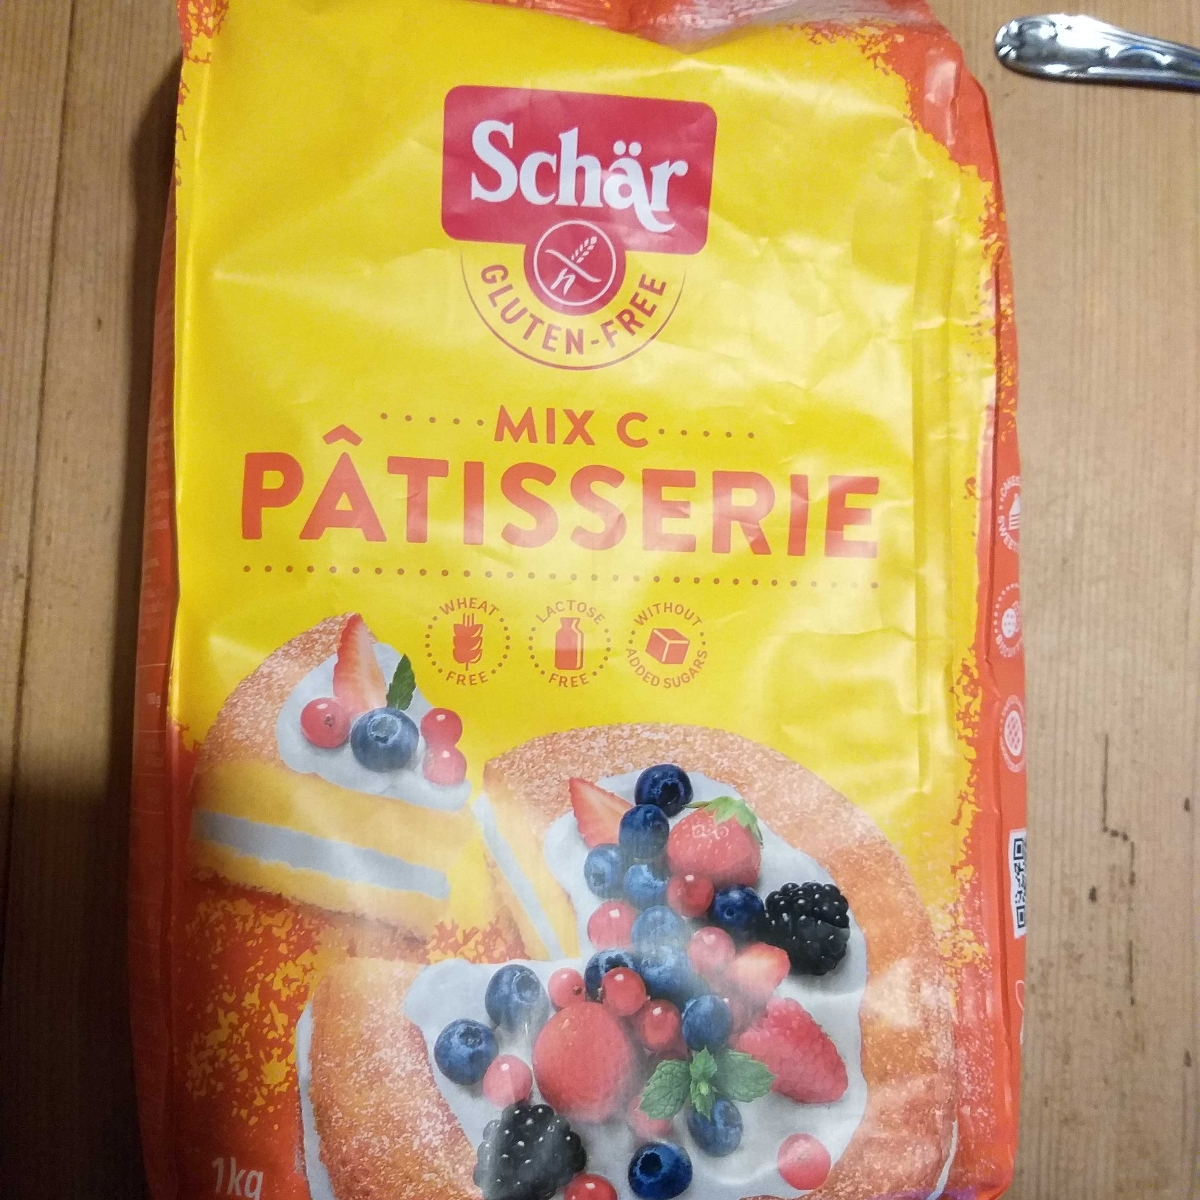 Mix C pour pâtisserie Schar